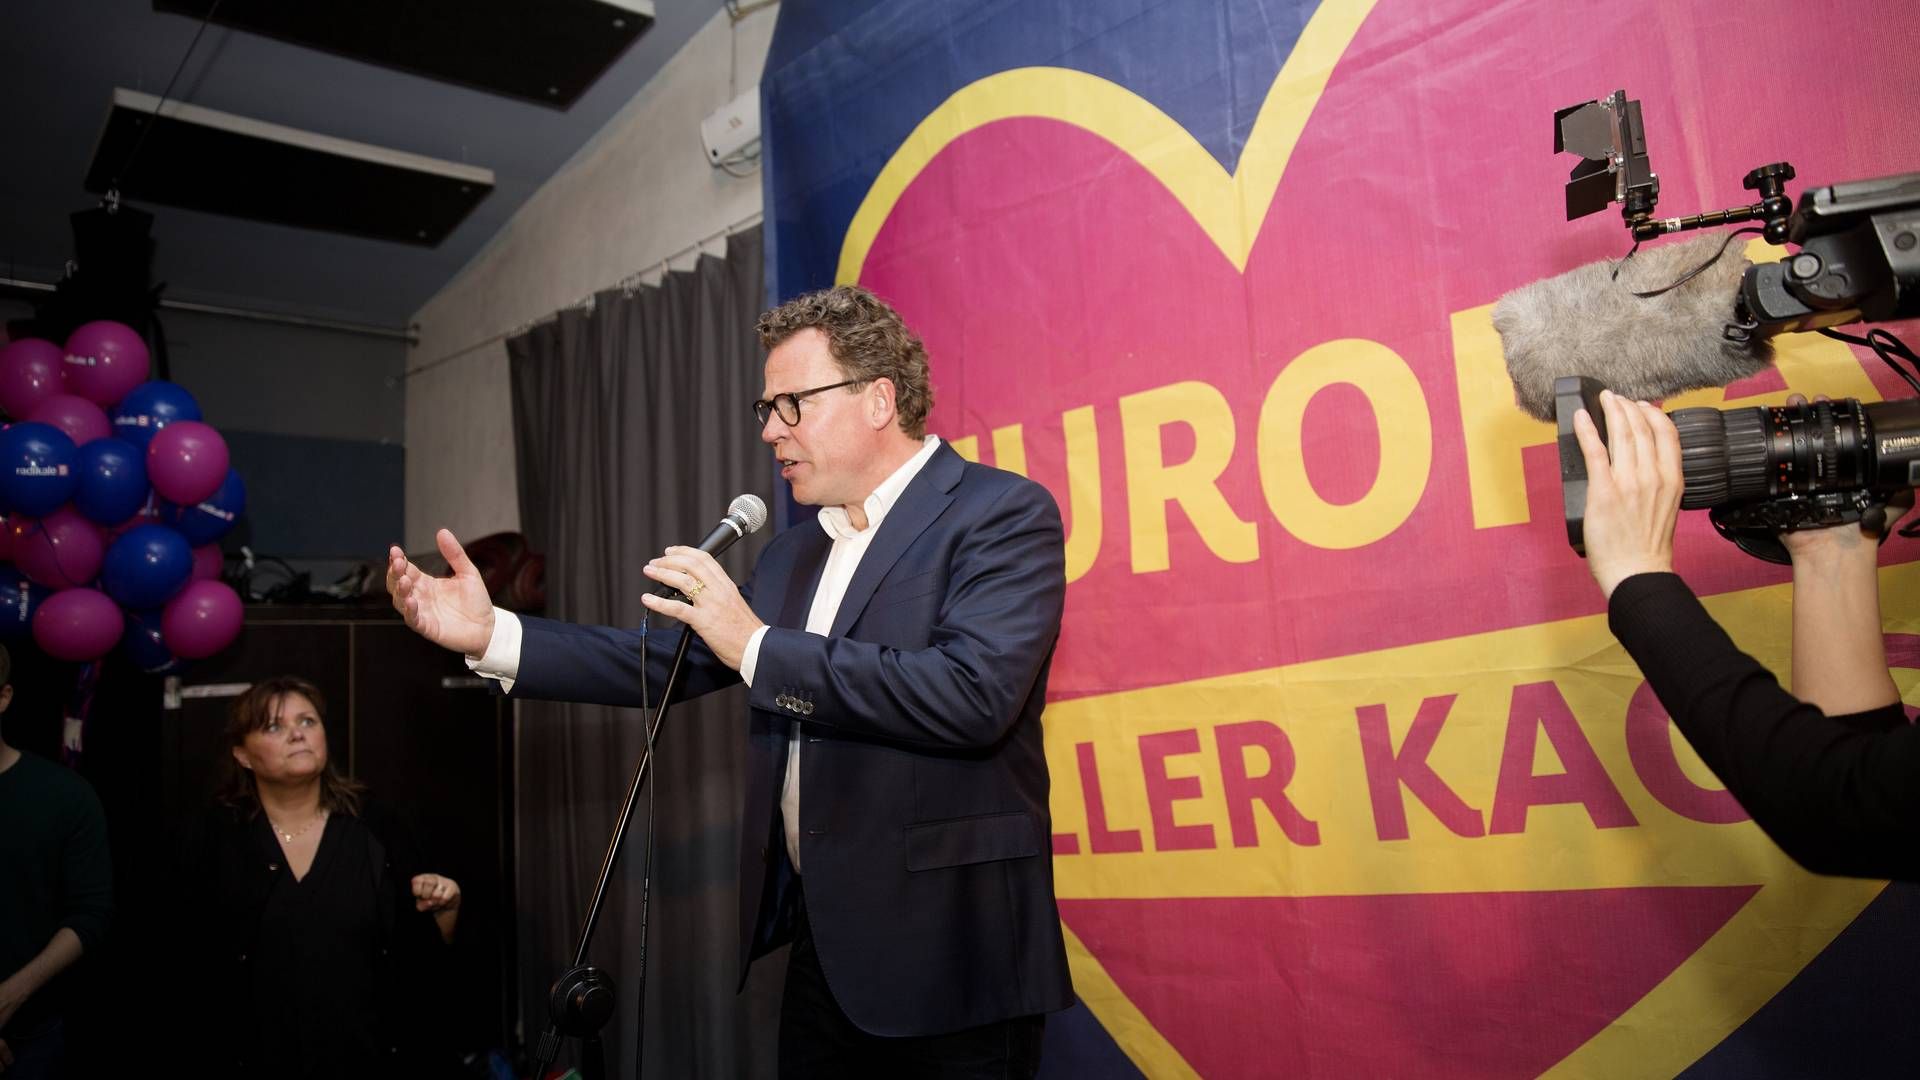 Morten Helveg til Radikale Venstres valgfest foran et banner med teksten "Europa eller kaos". | Foto: Thomas Borberg